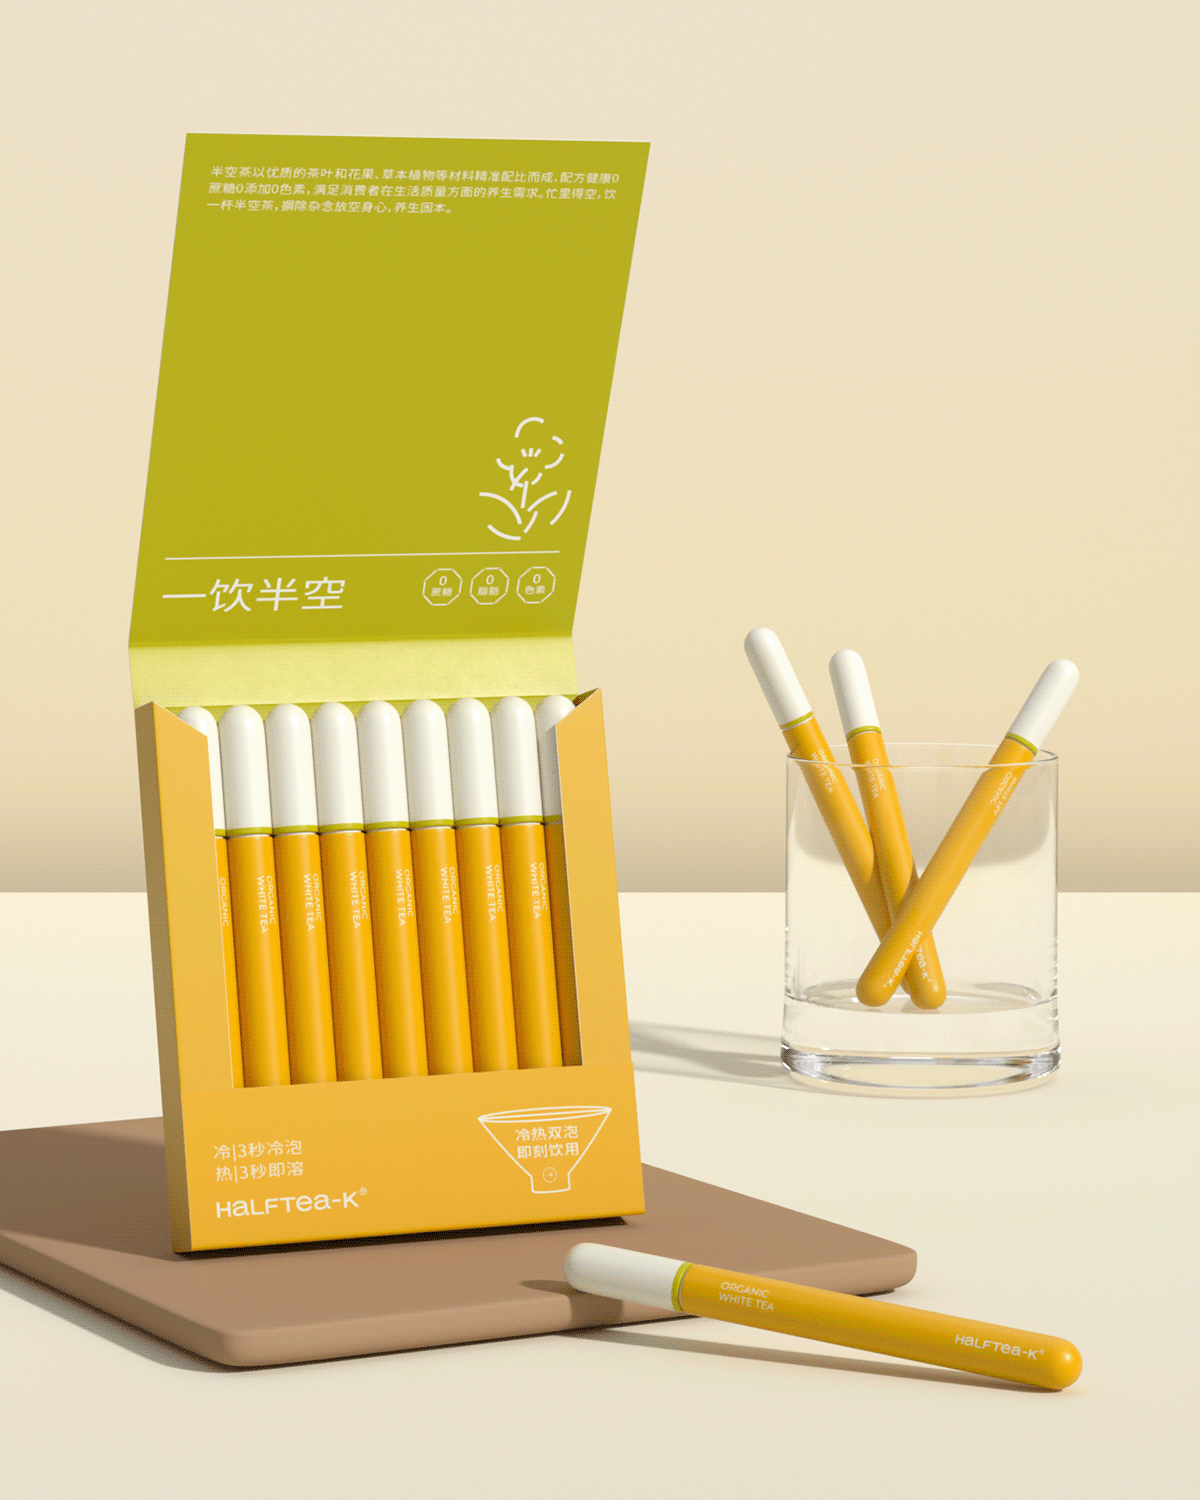 Packaging 包装 包装设计 品牌设计 图形设计 平面设计 视觉设计